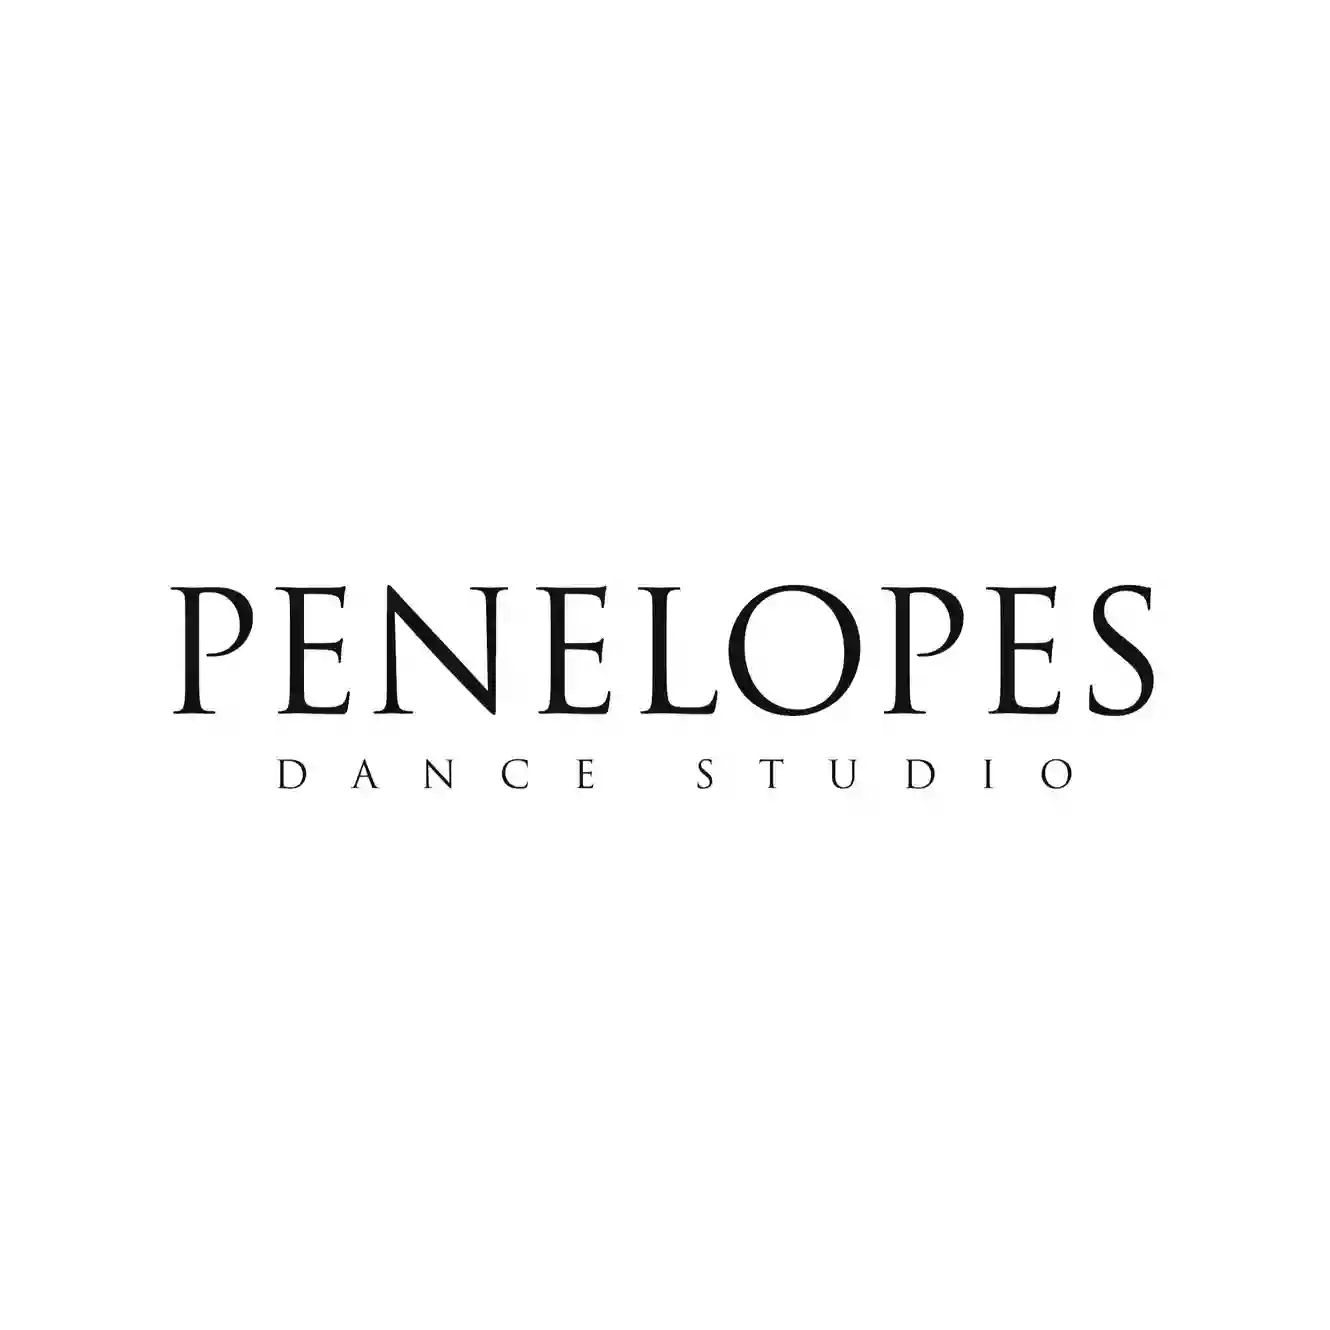 Penelope's Dance Studio - Ballet & Contemporary Dance Studio Birmingham